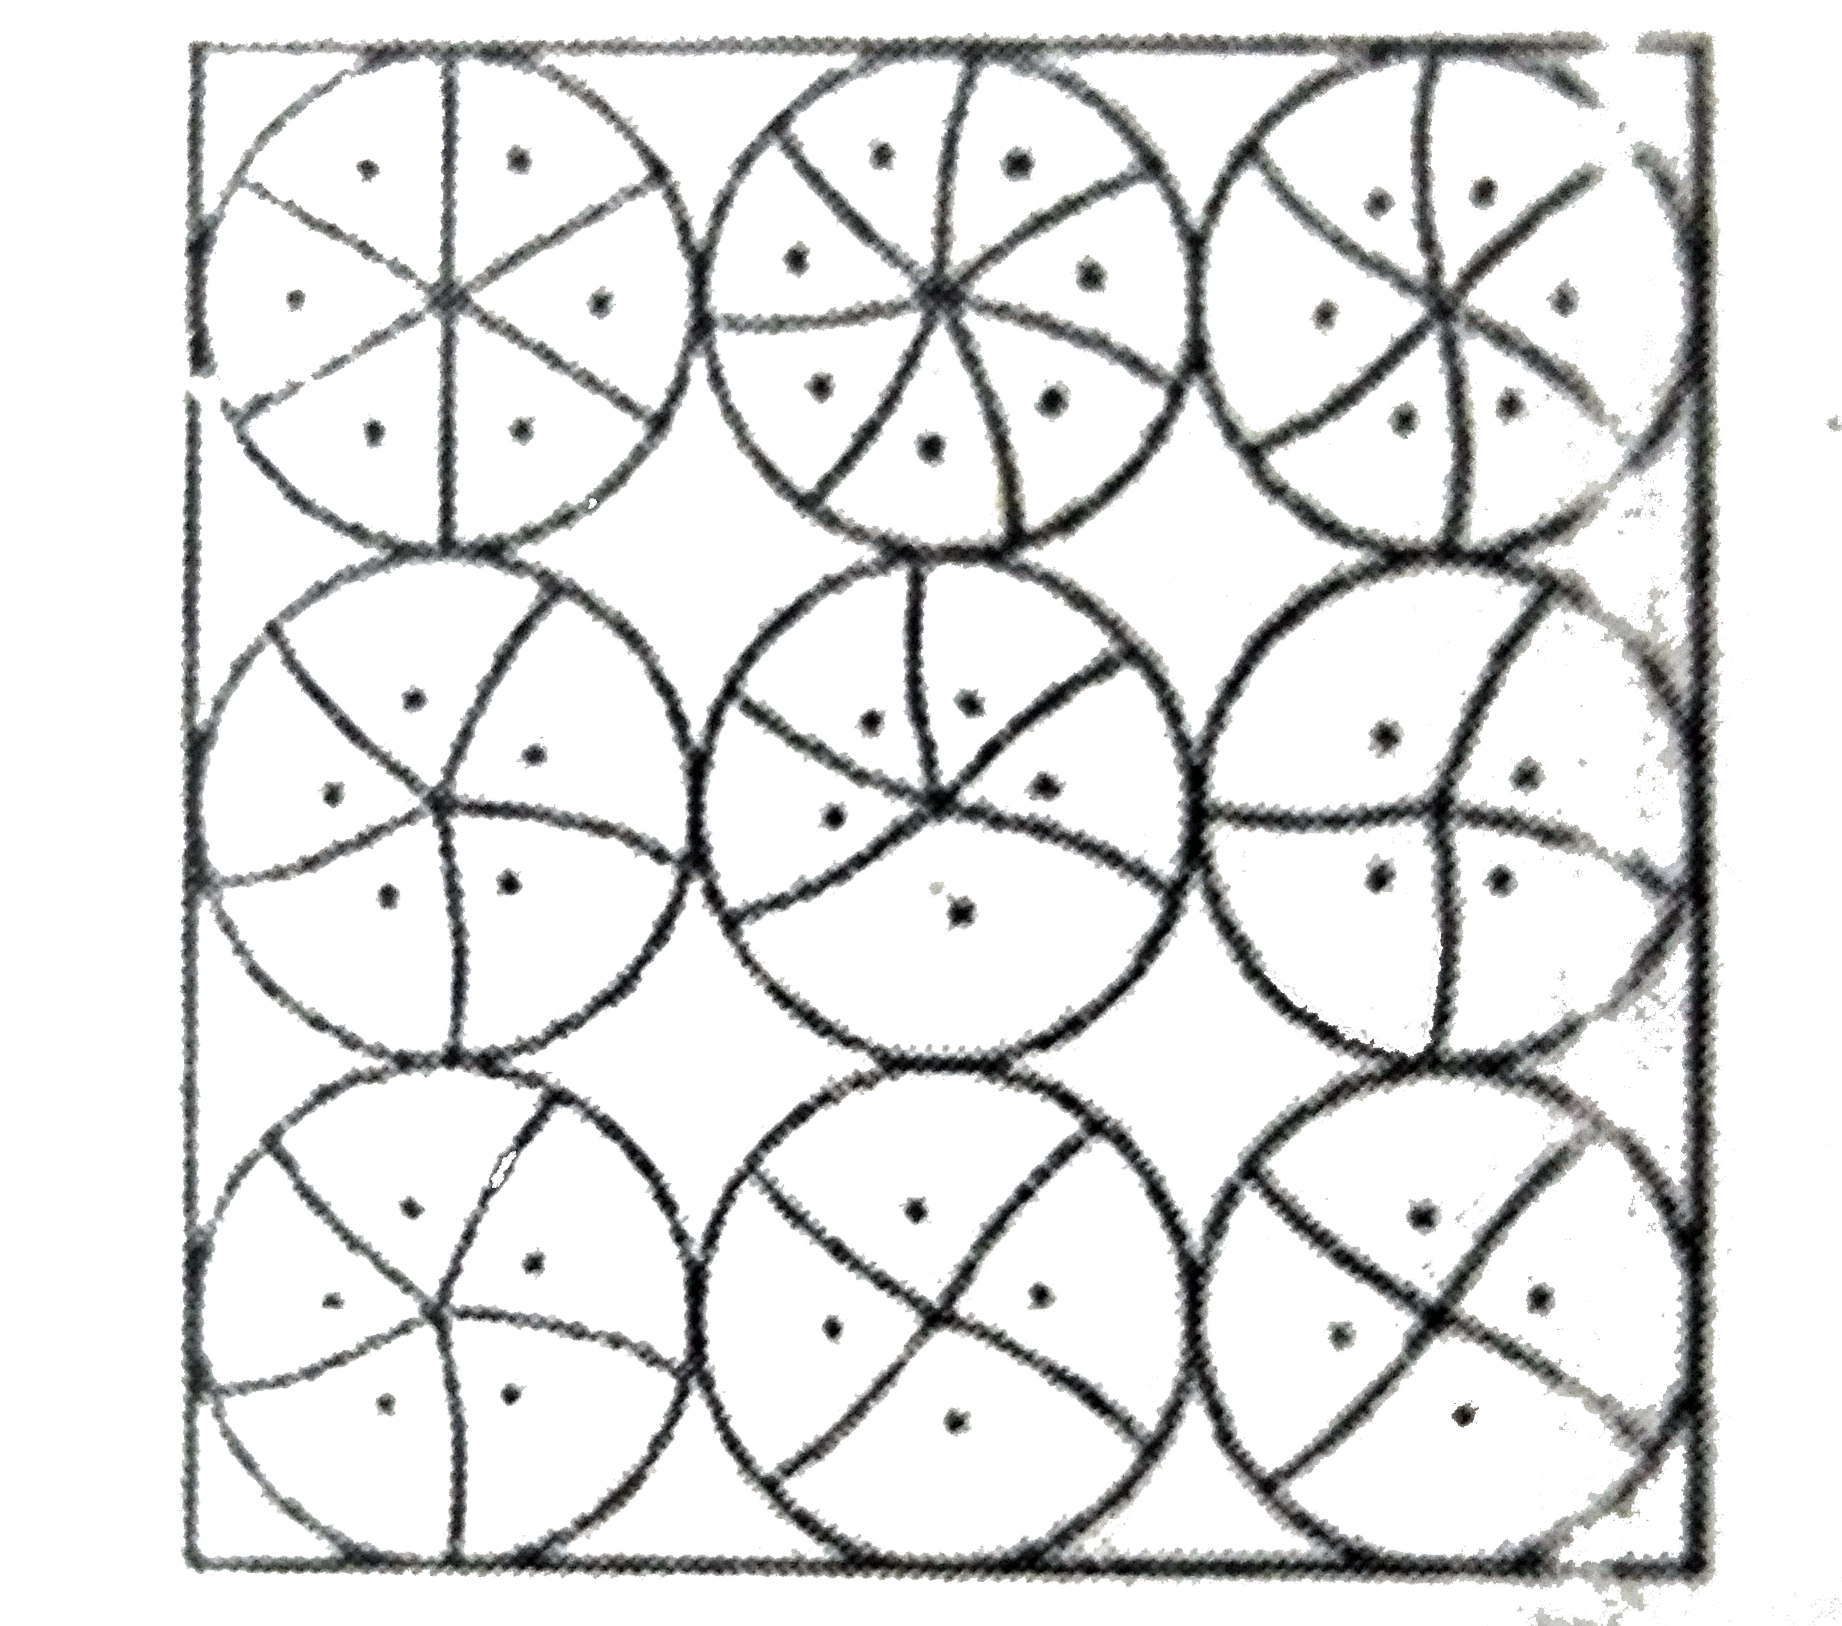 एक वर्गाकार रुमाल पर, नौ वृत्ताकार डिजाइन बने है,  जिसमे से प्रत्येक की त्रिज्या 7 सेमी  है (देखिए आकृति) । रुमाल के शेष भाग का क्षेत्रफल ज्ञात कीजिए।